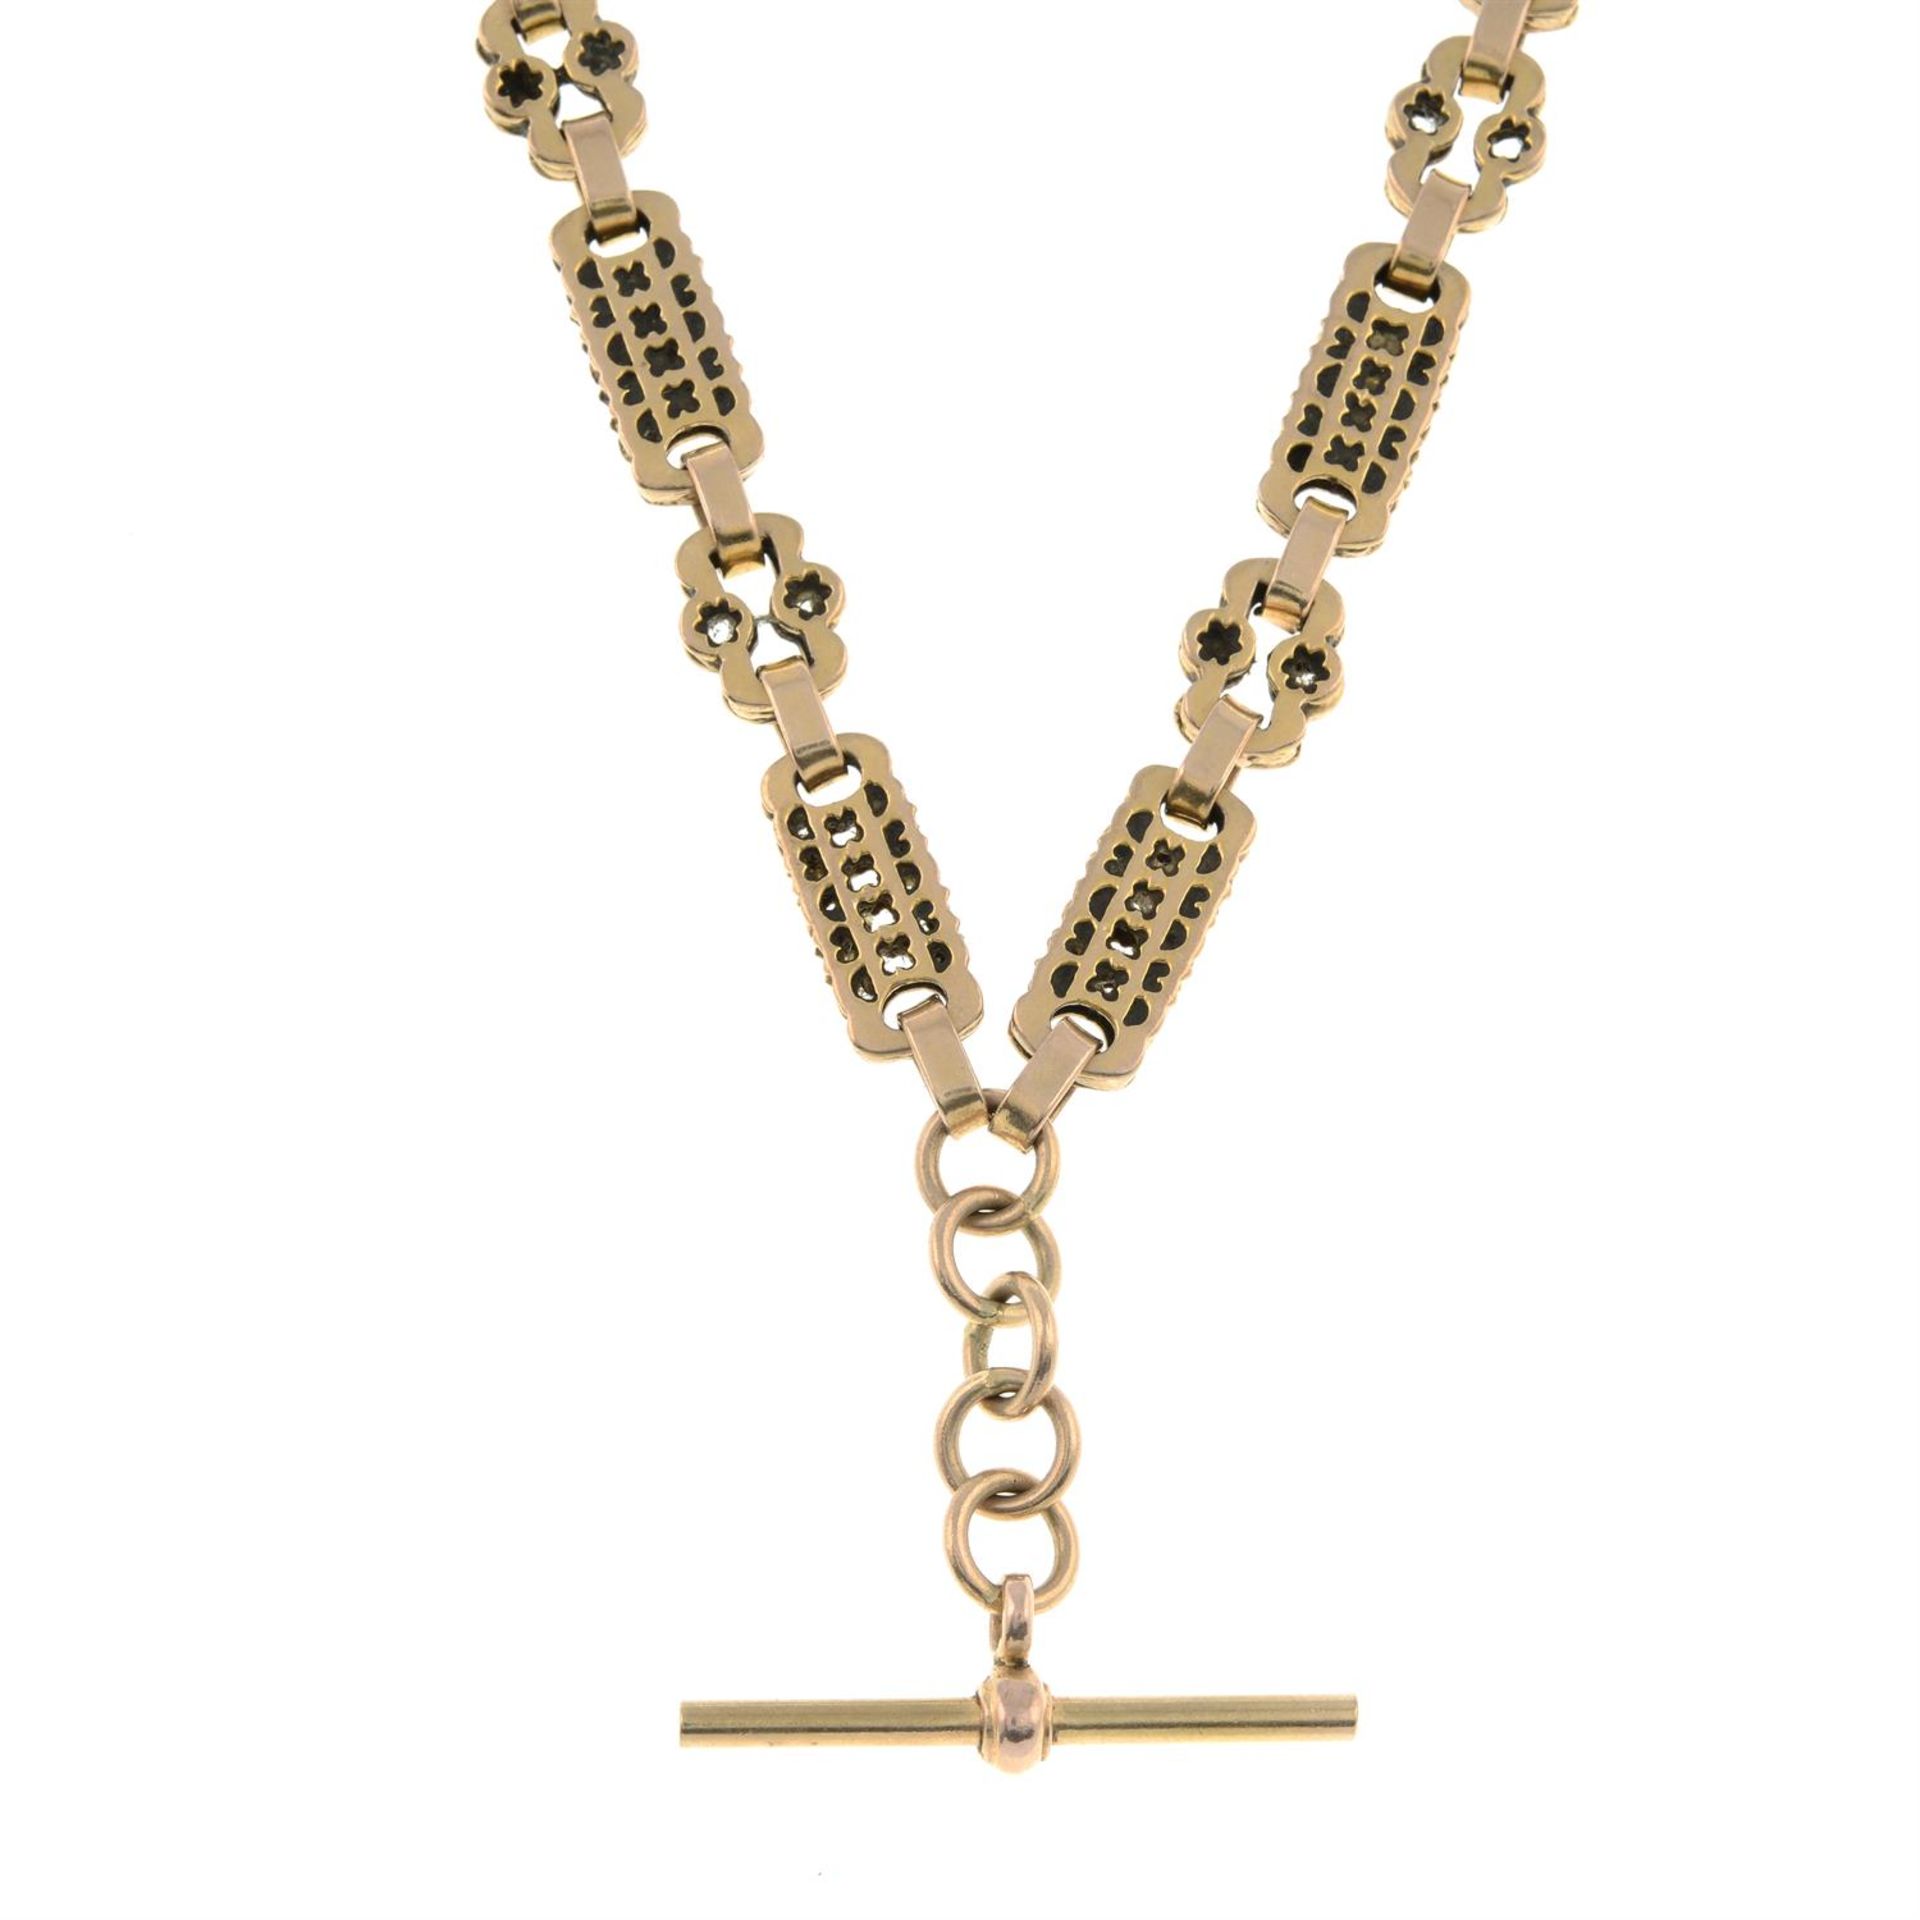 A 9ct gold fancy-link albert chain.